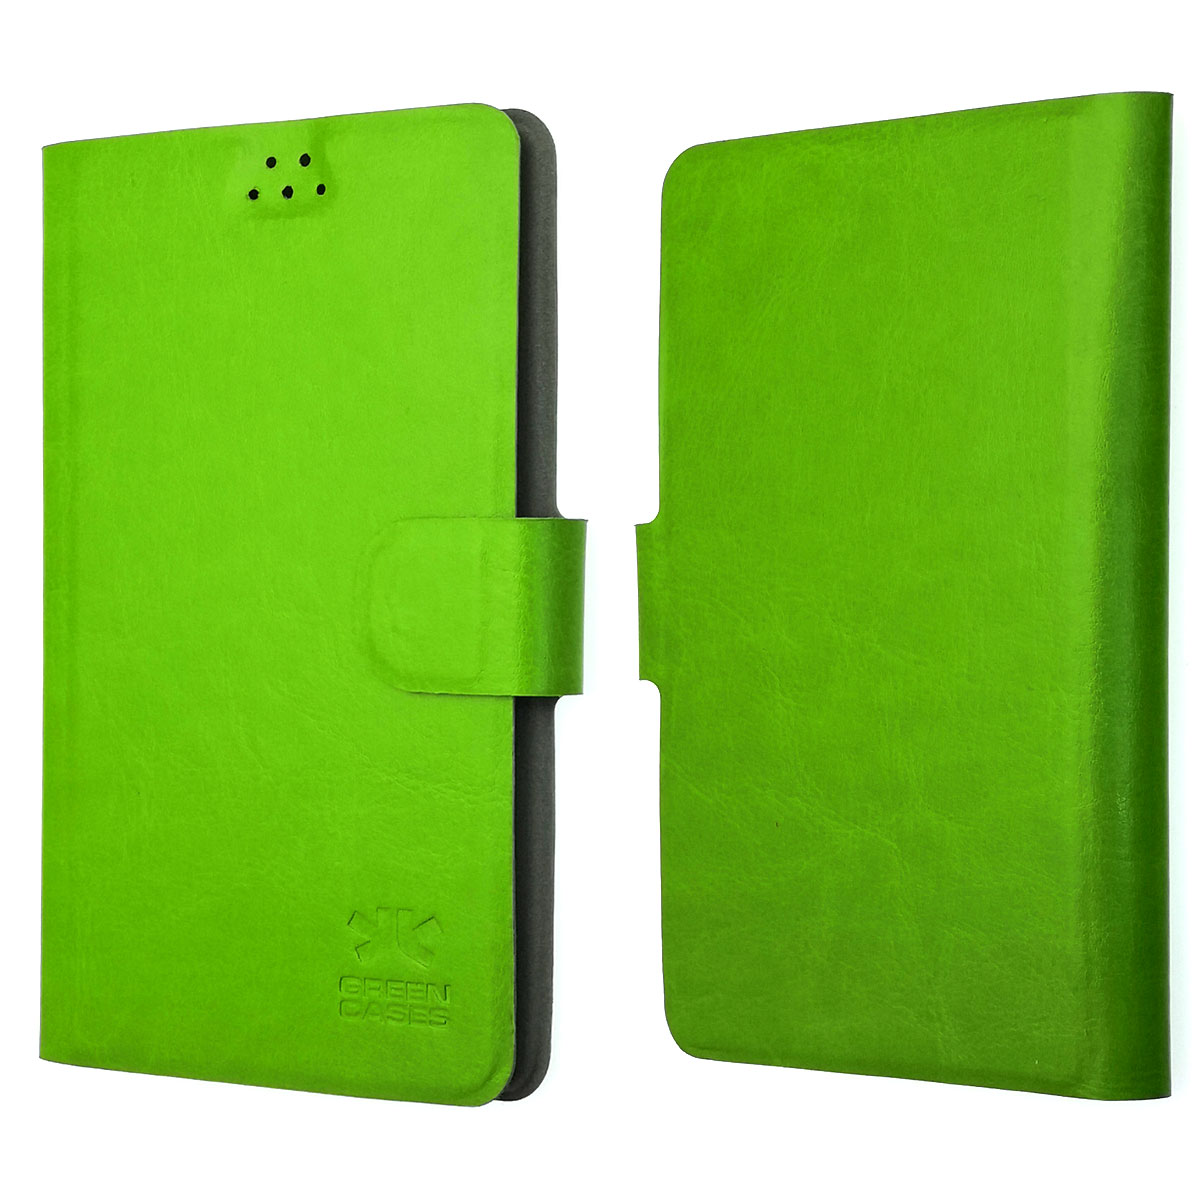 Чехол книжка универсальная для смартфонов размером M, экокожа, цвет зеленый.